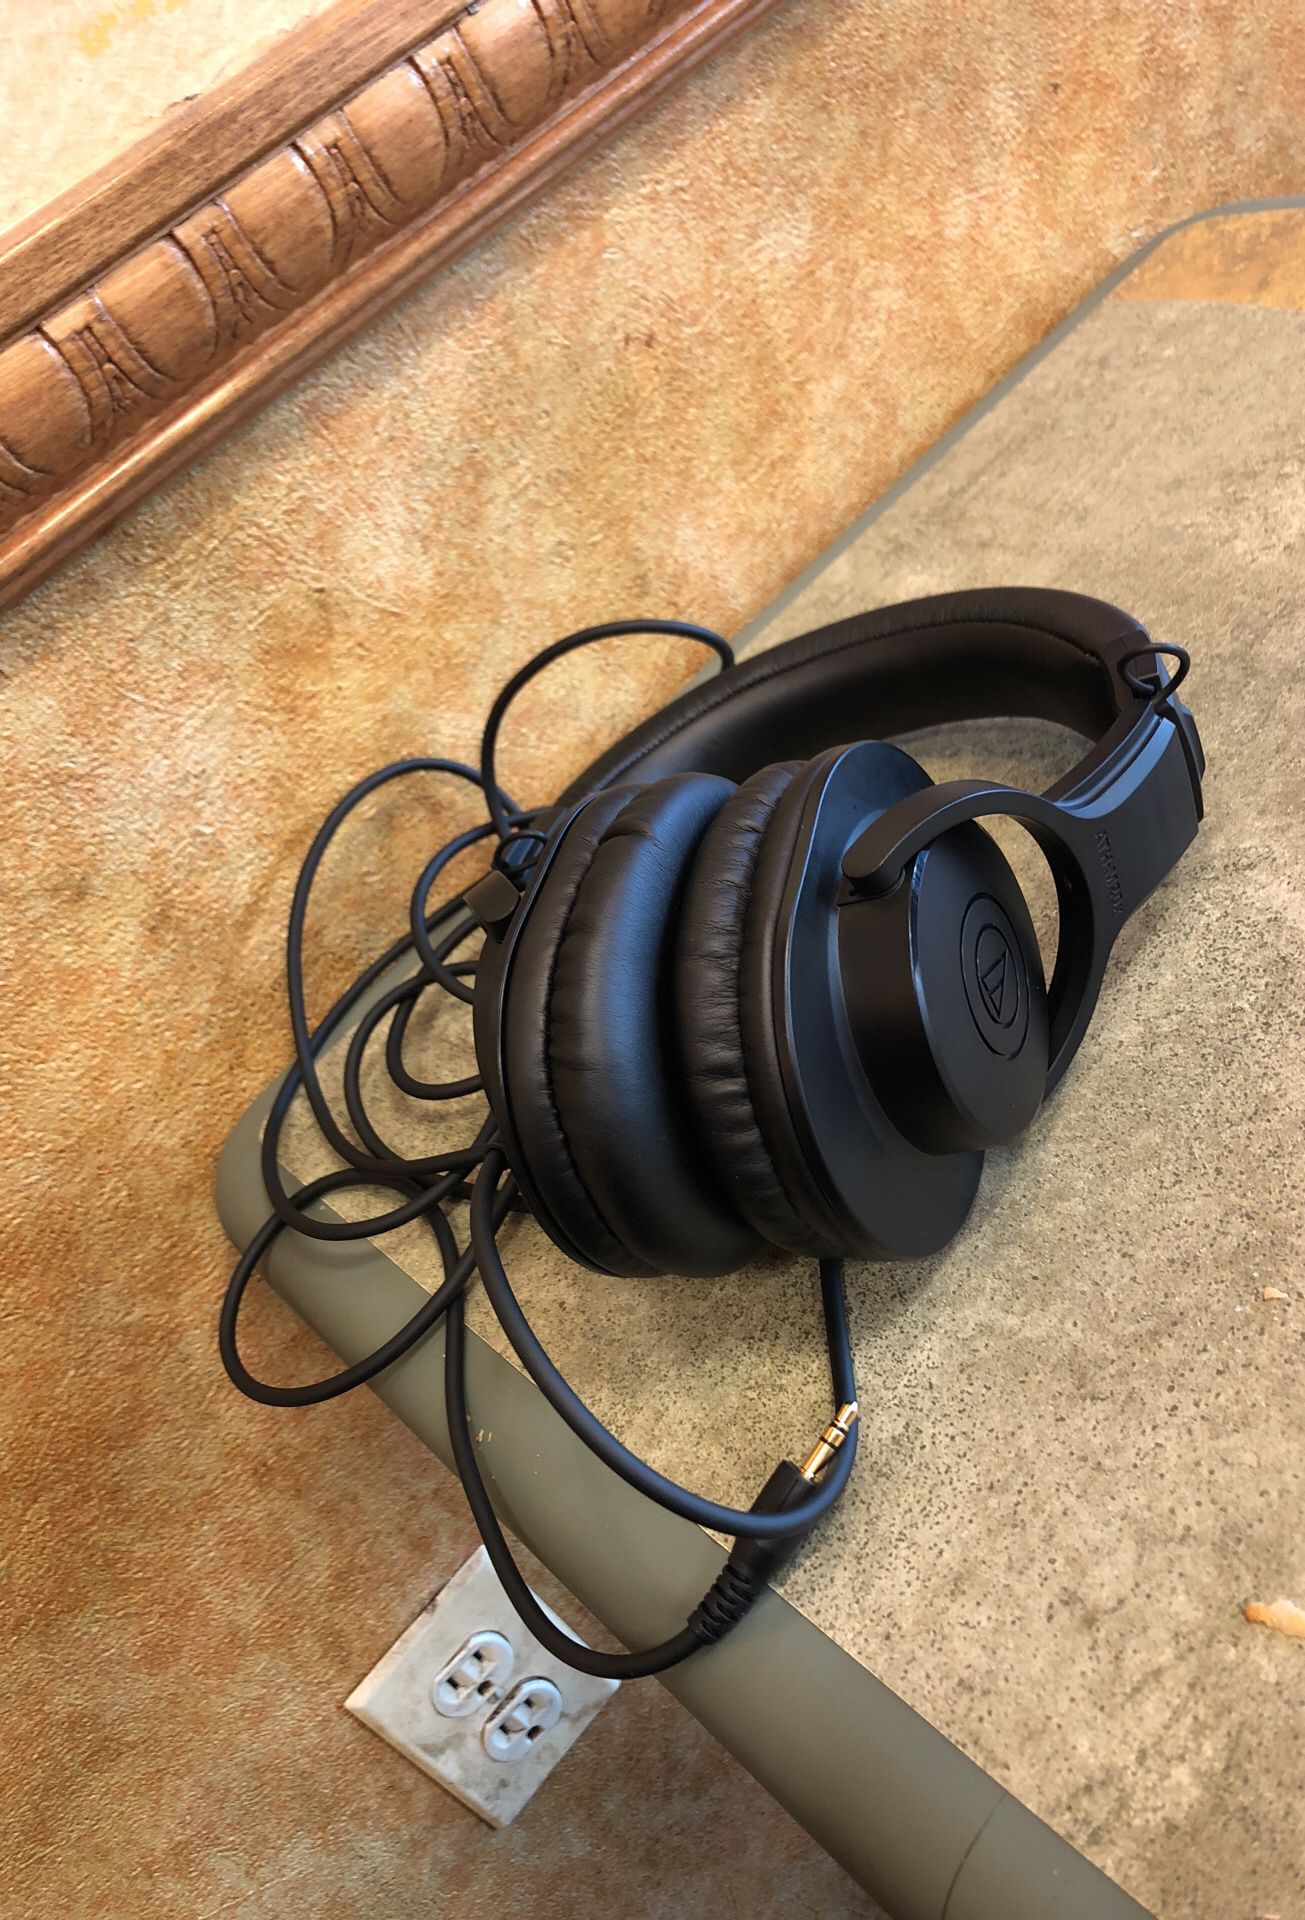 Official studio headphones